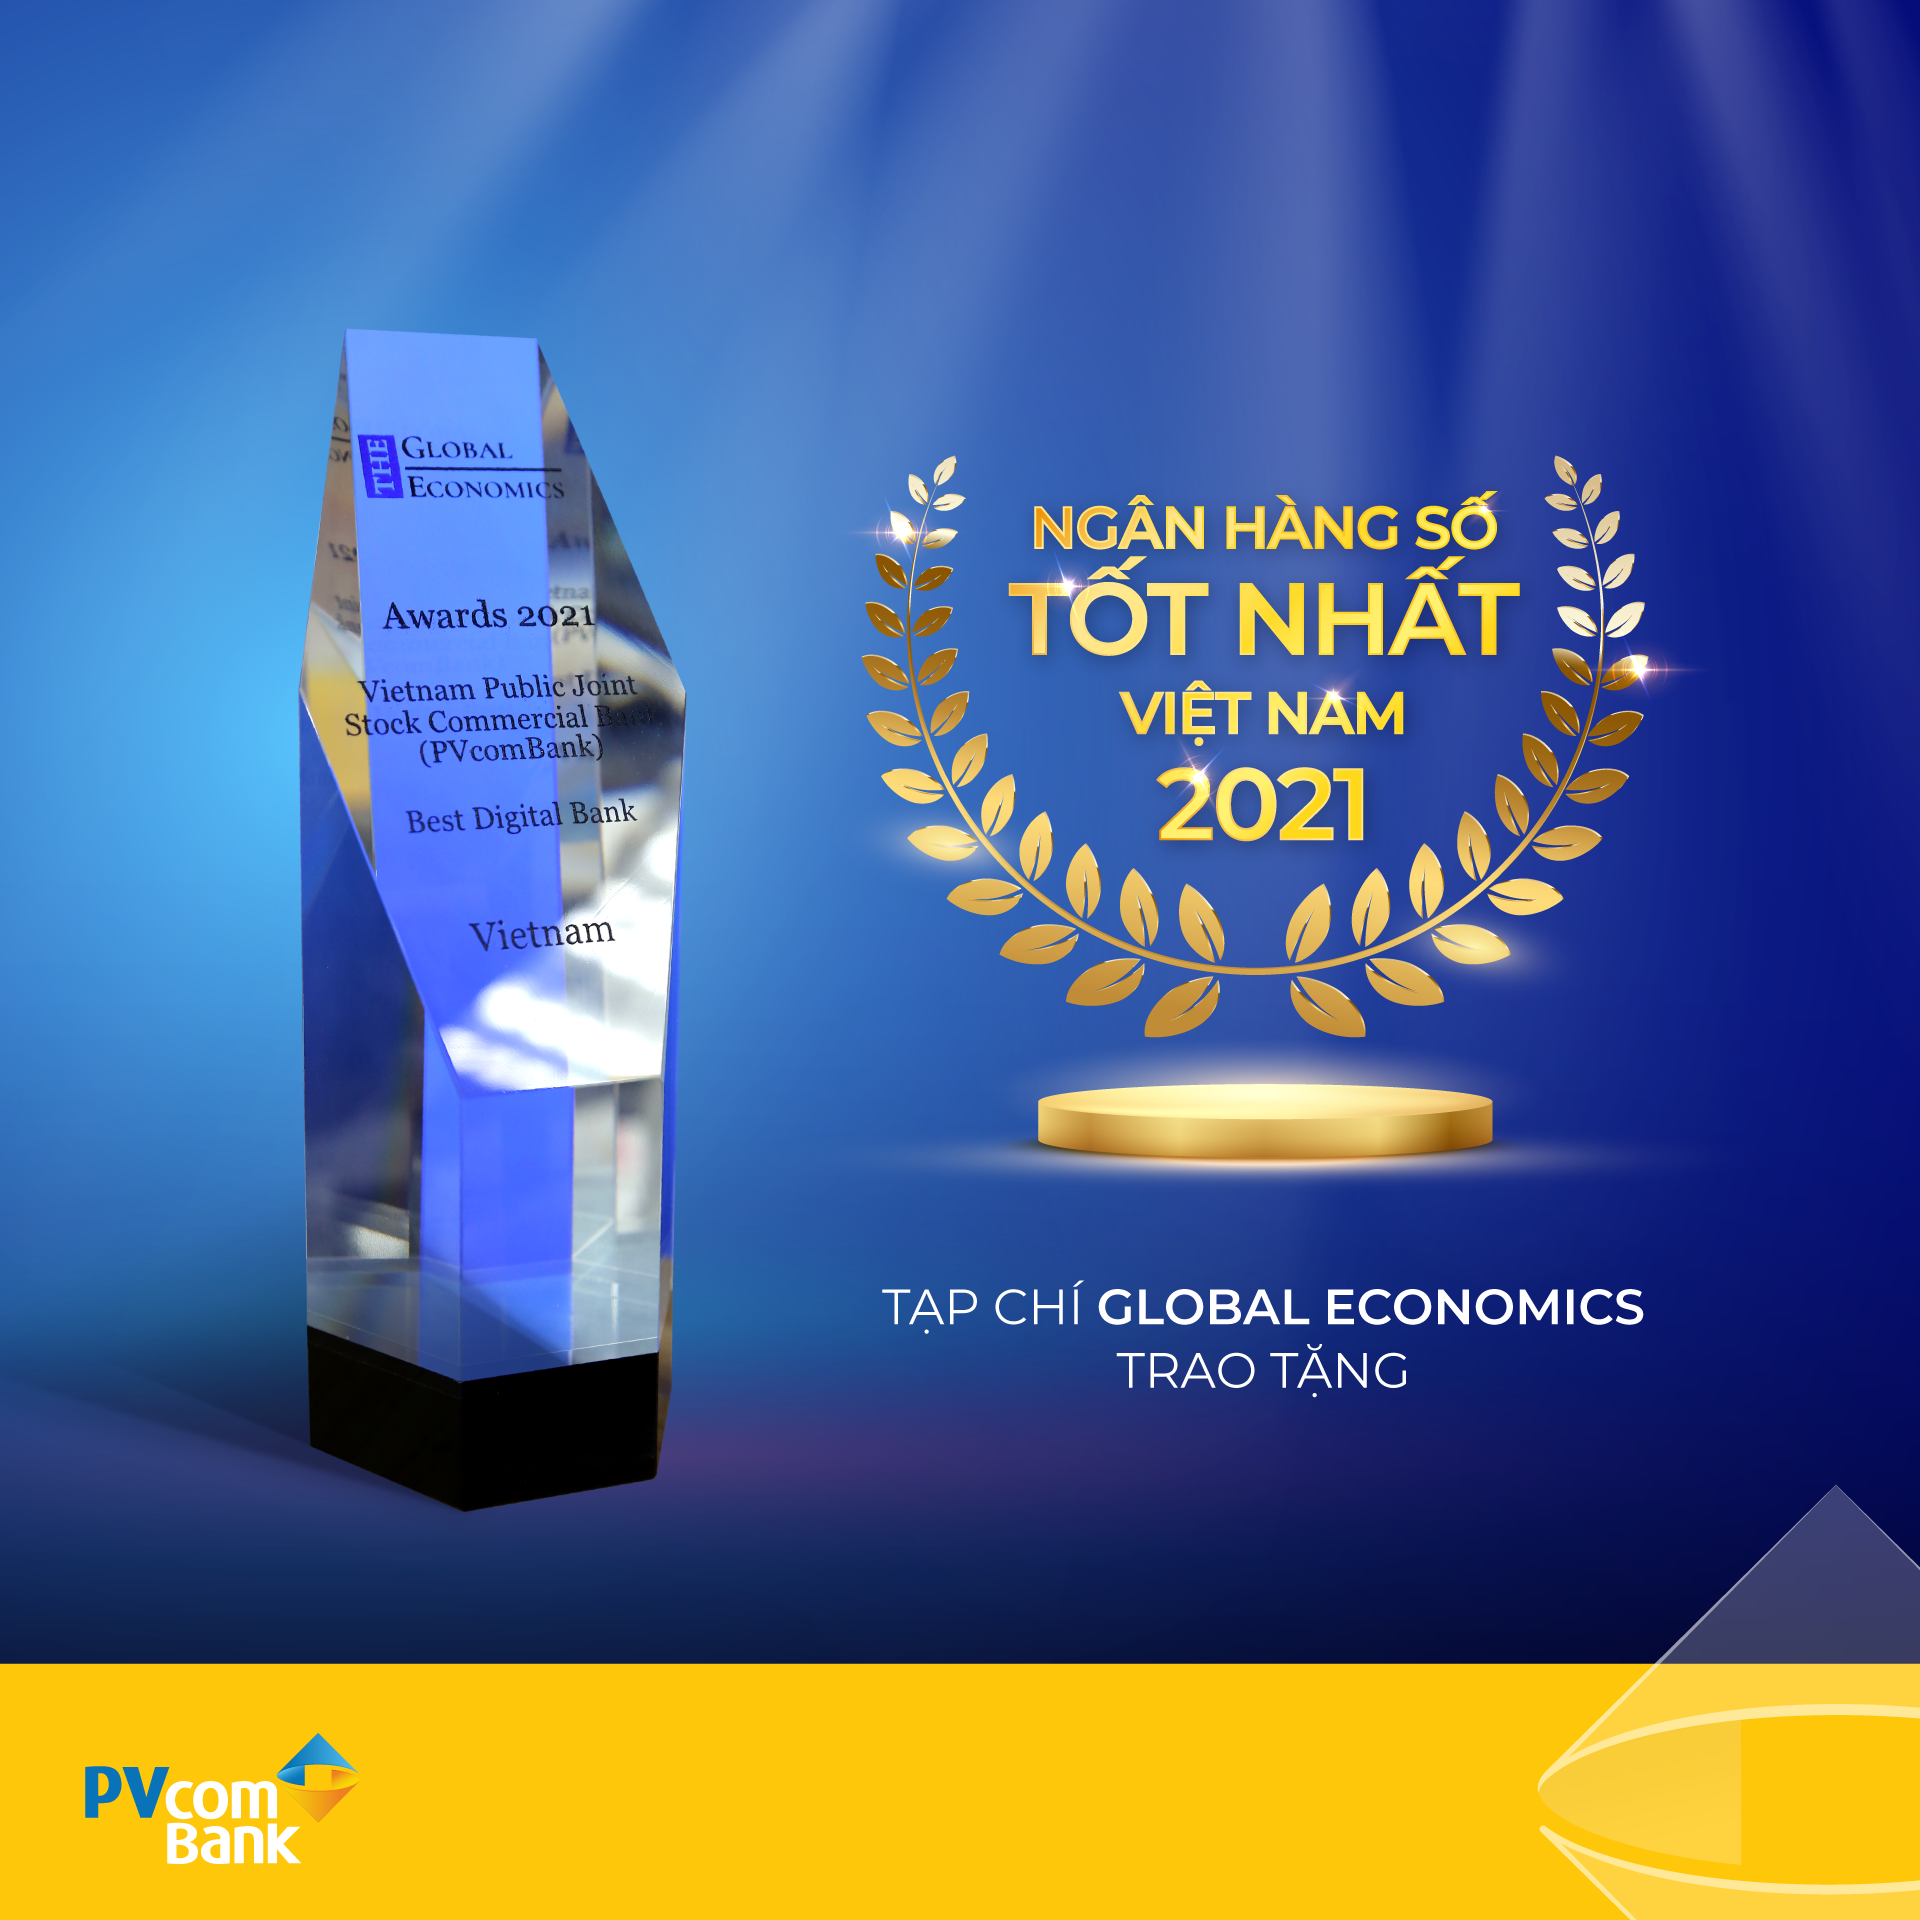 
Tạp chí The Global Economics vinh danh PVcomBank là ngân hàng số tốt nhất Việt Nam 2021 - Ảnh 1.